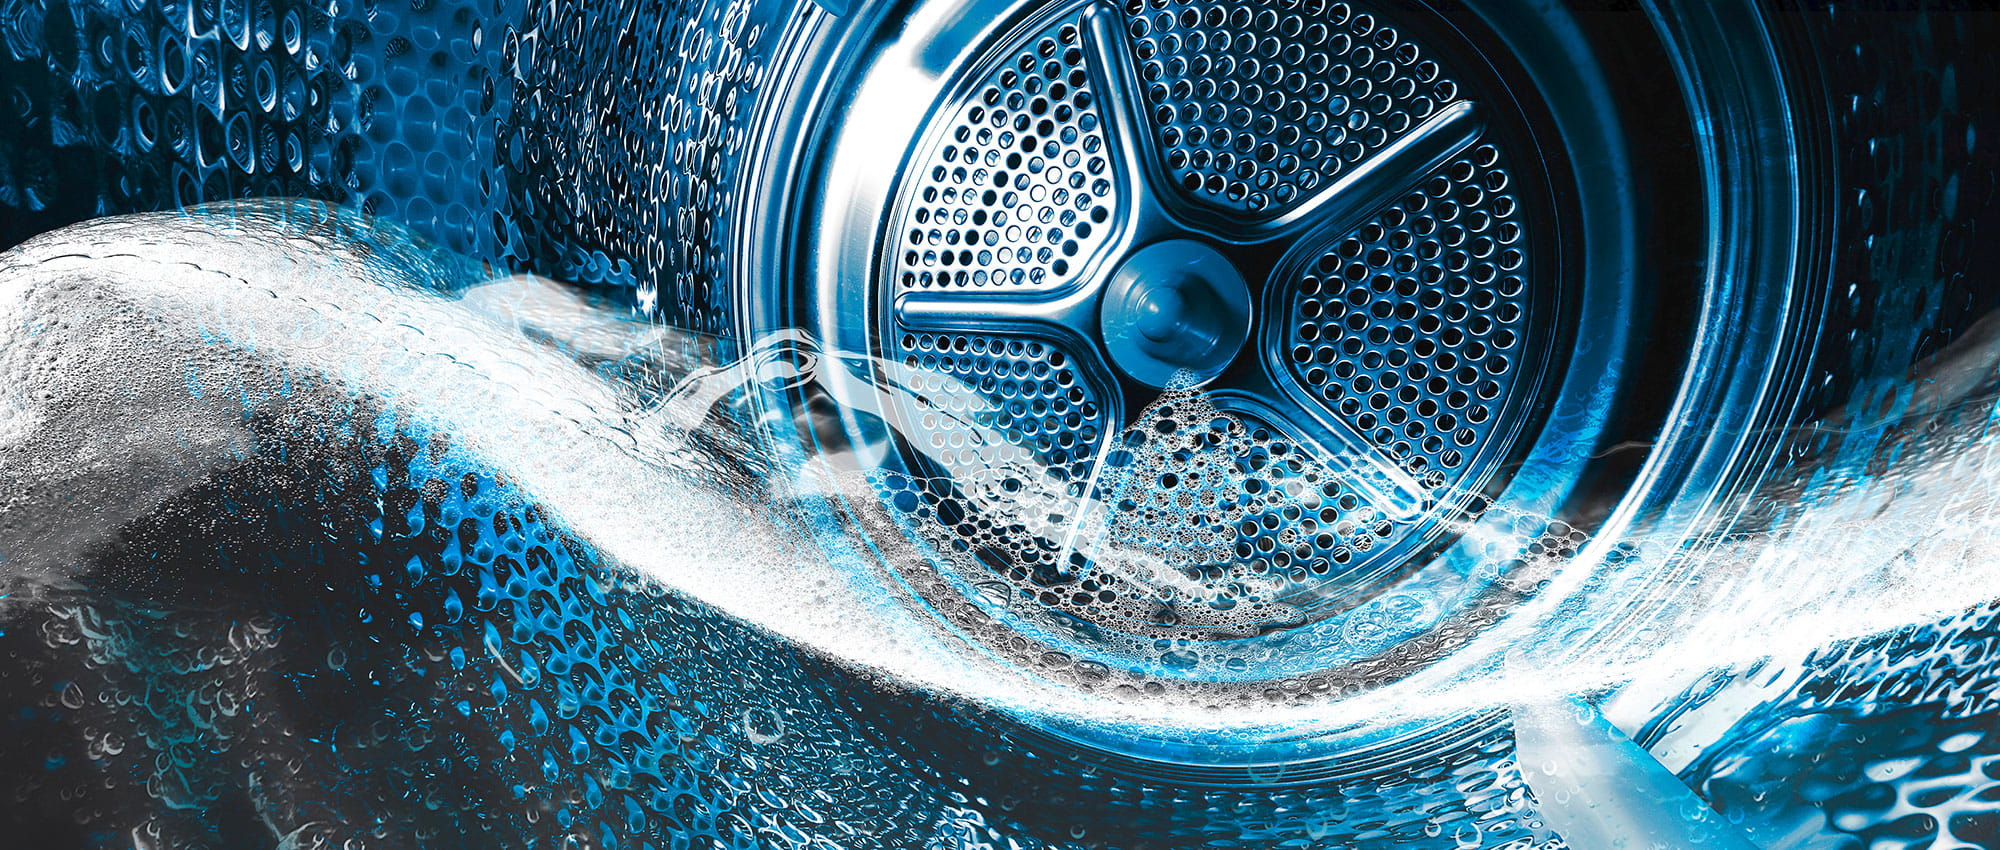 Waschmaschinentrommel ist zur Hälfte mit Wasser gefüllt